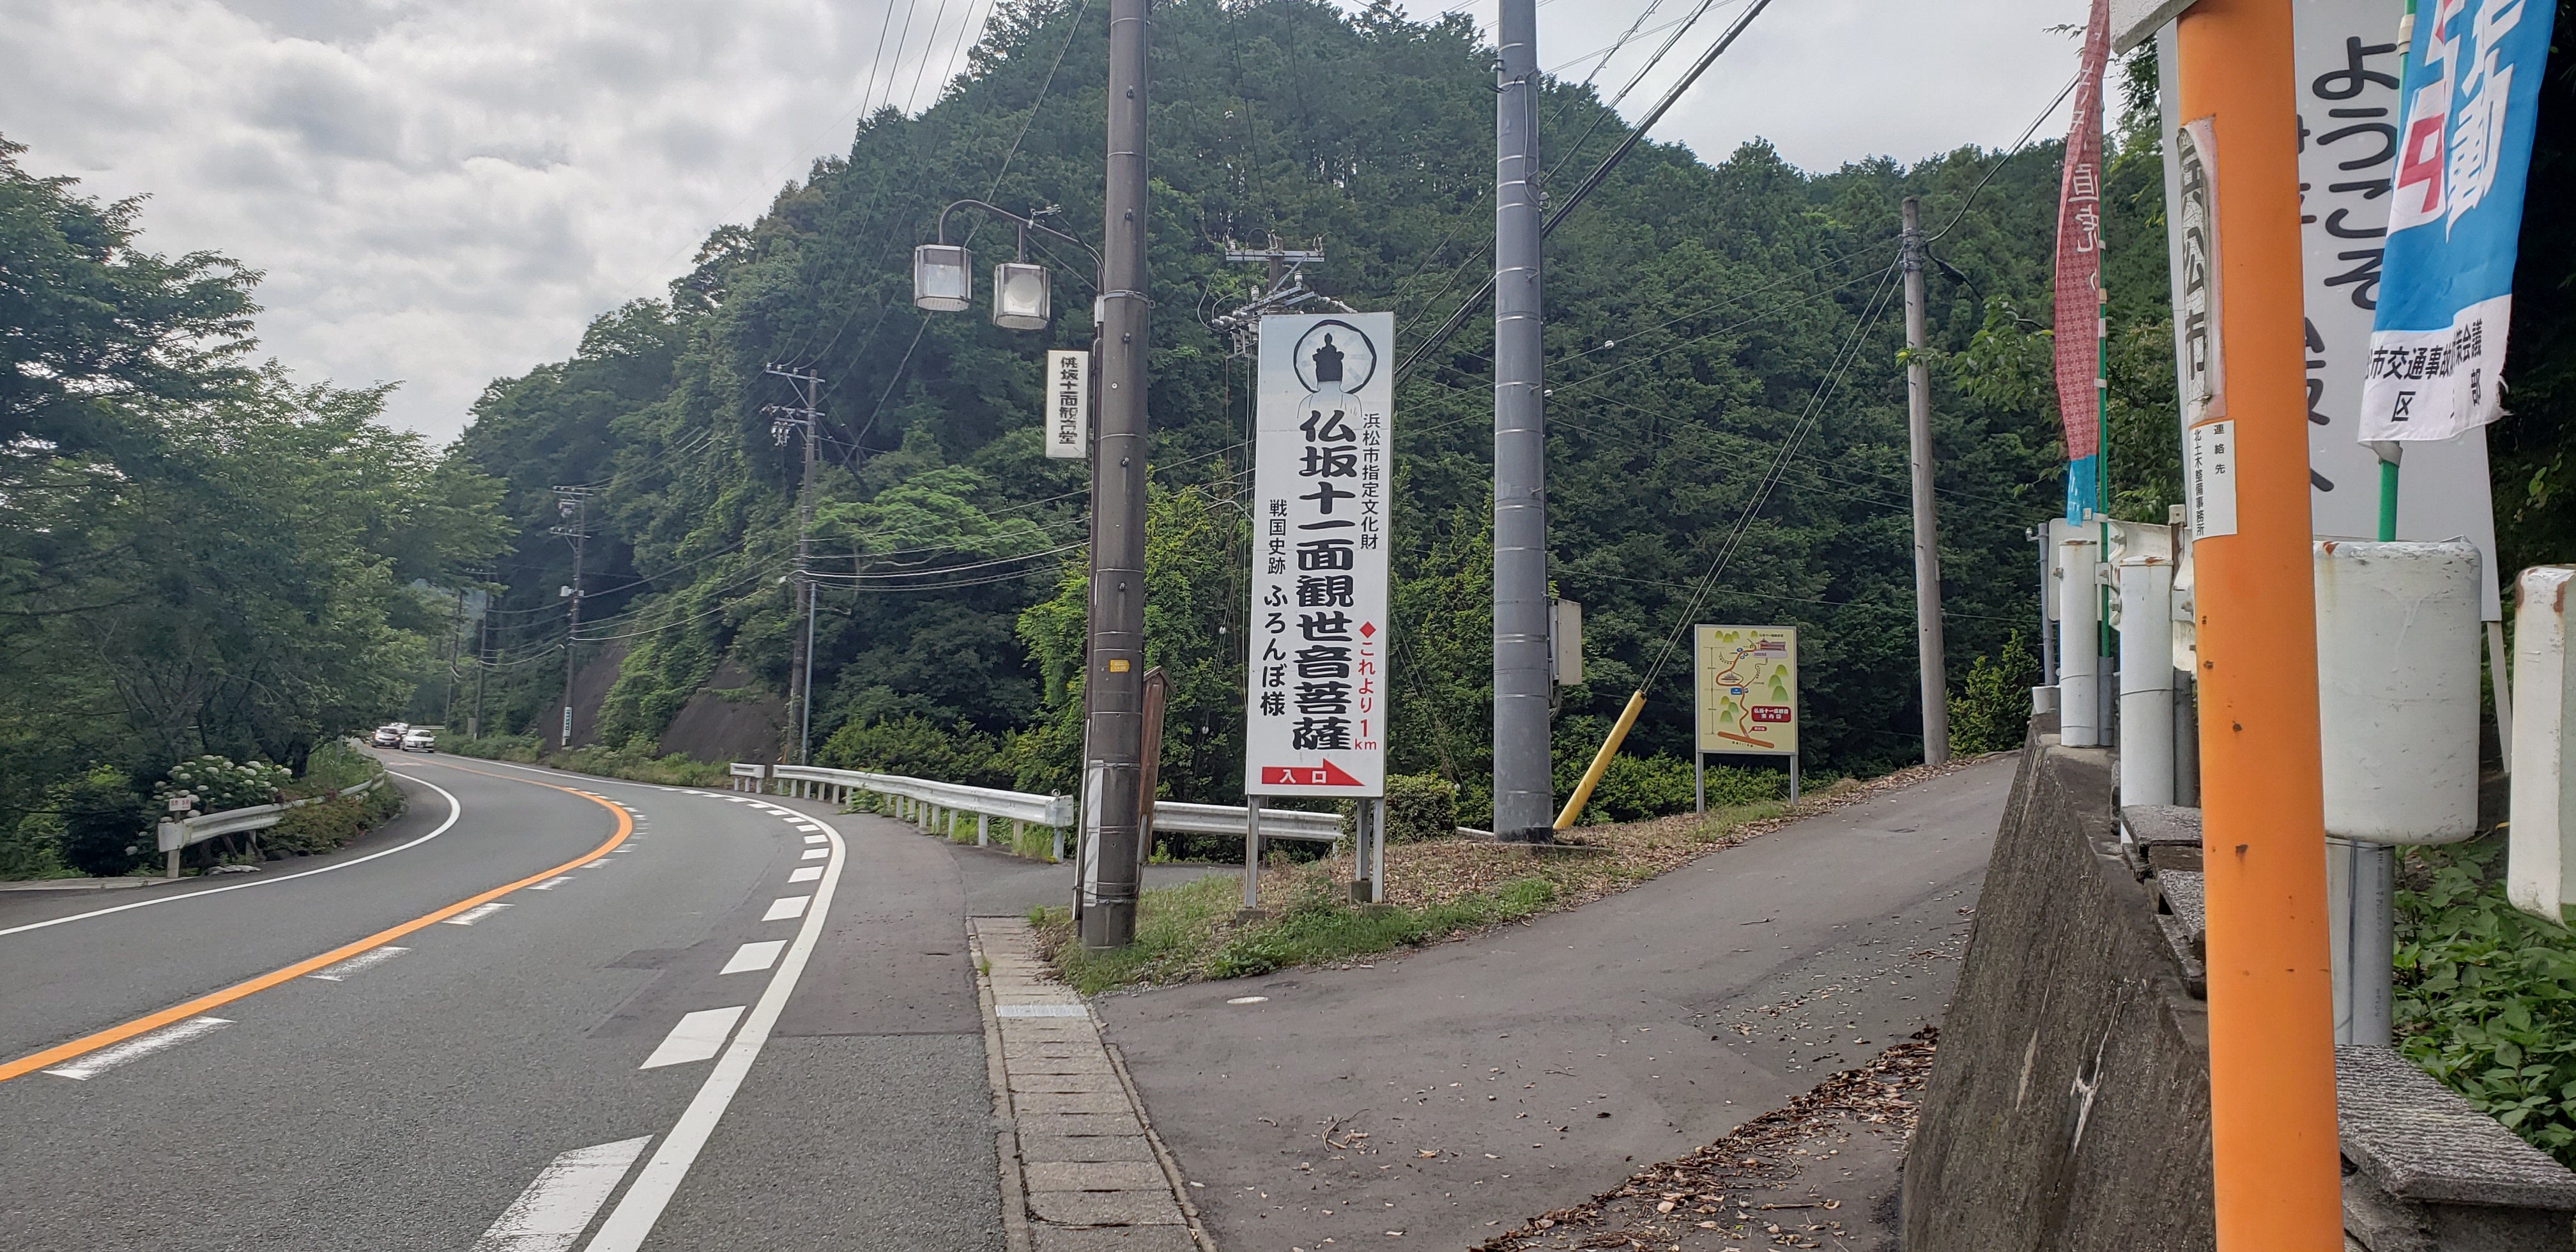 607 史跡遺跡 ふろんぼ様と仏坂古戦場 静岡県浜松市をドライブしよう 私が見た静岡県浜松市はこんなに楽しい